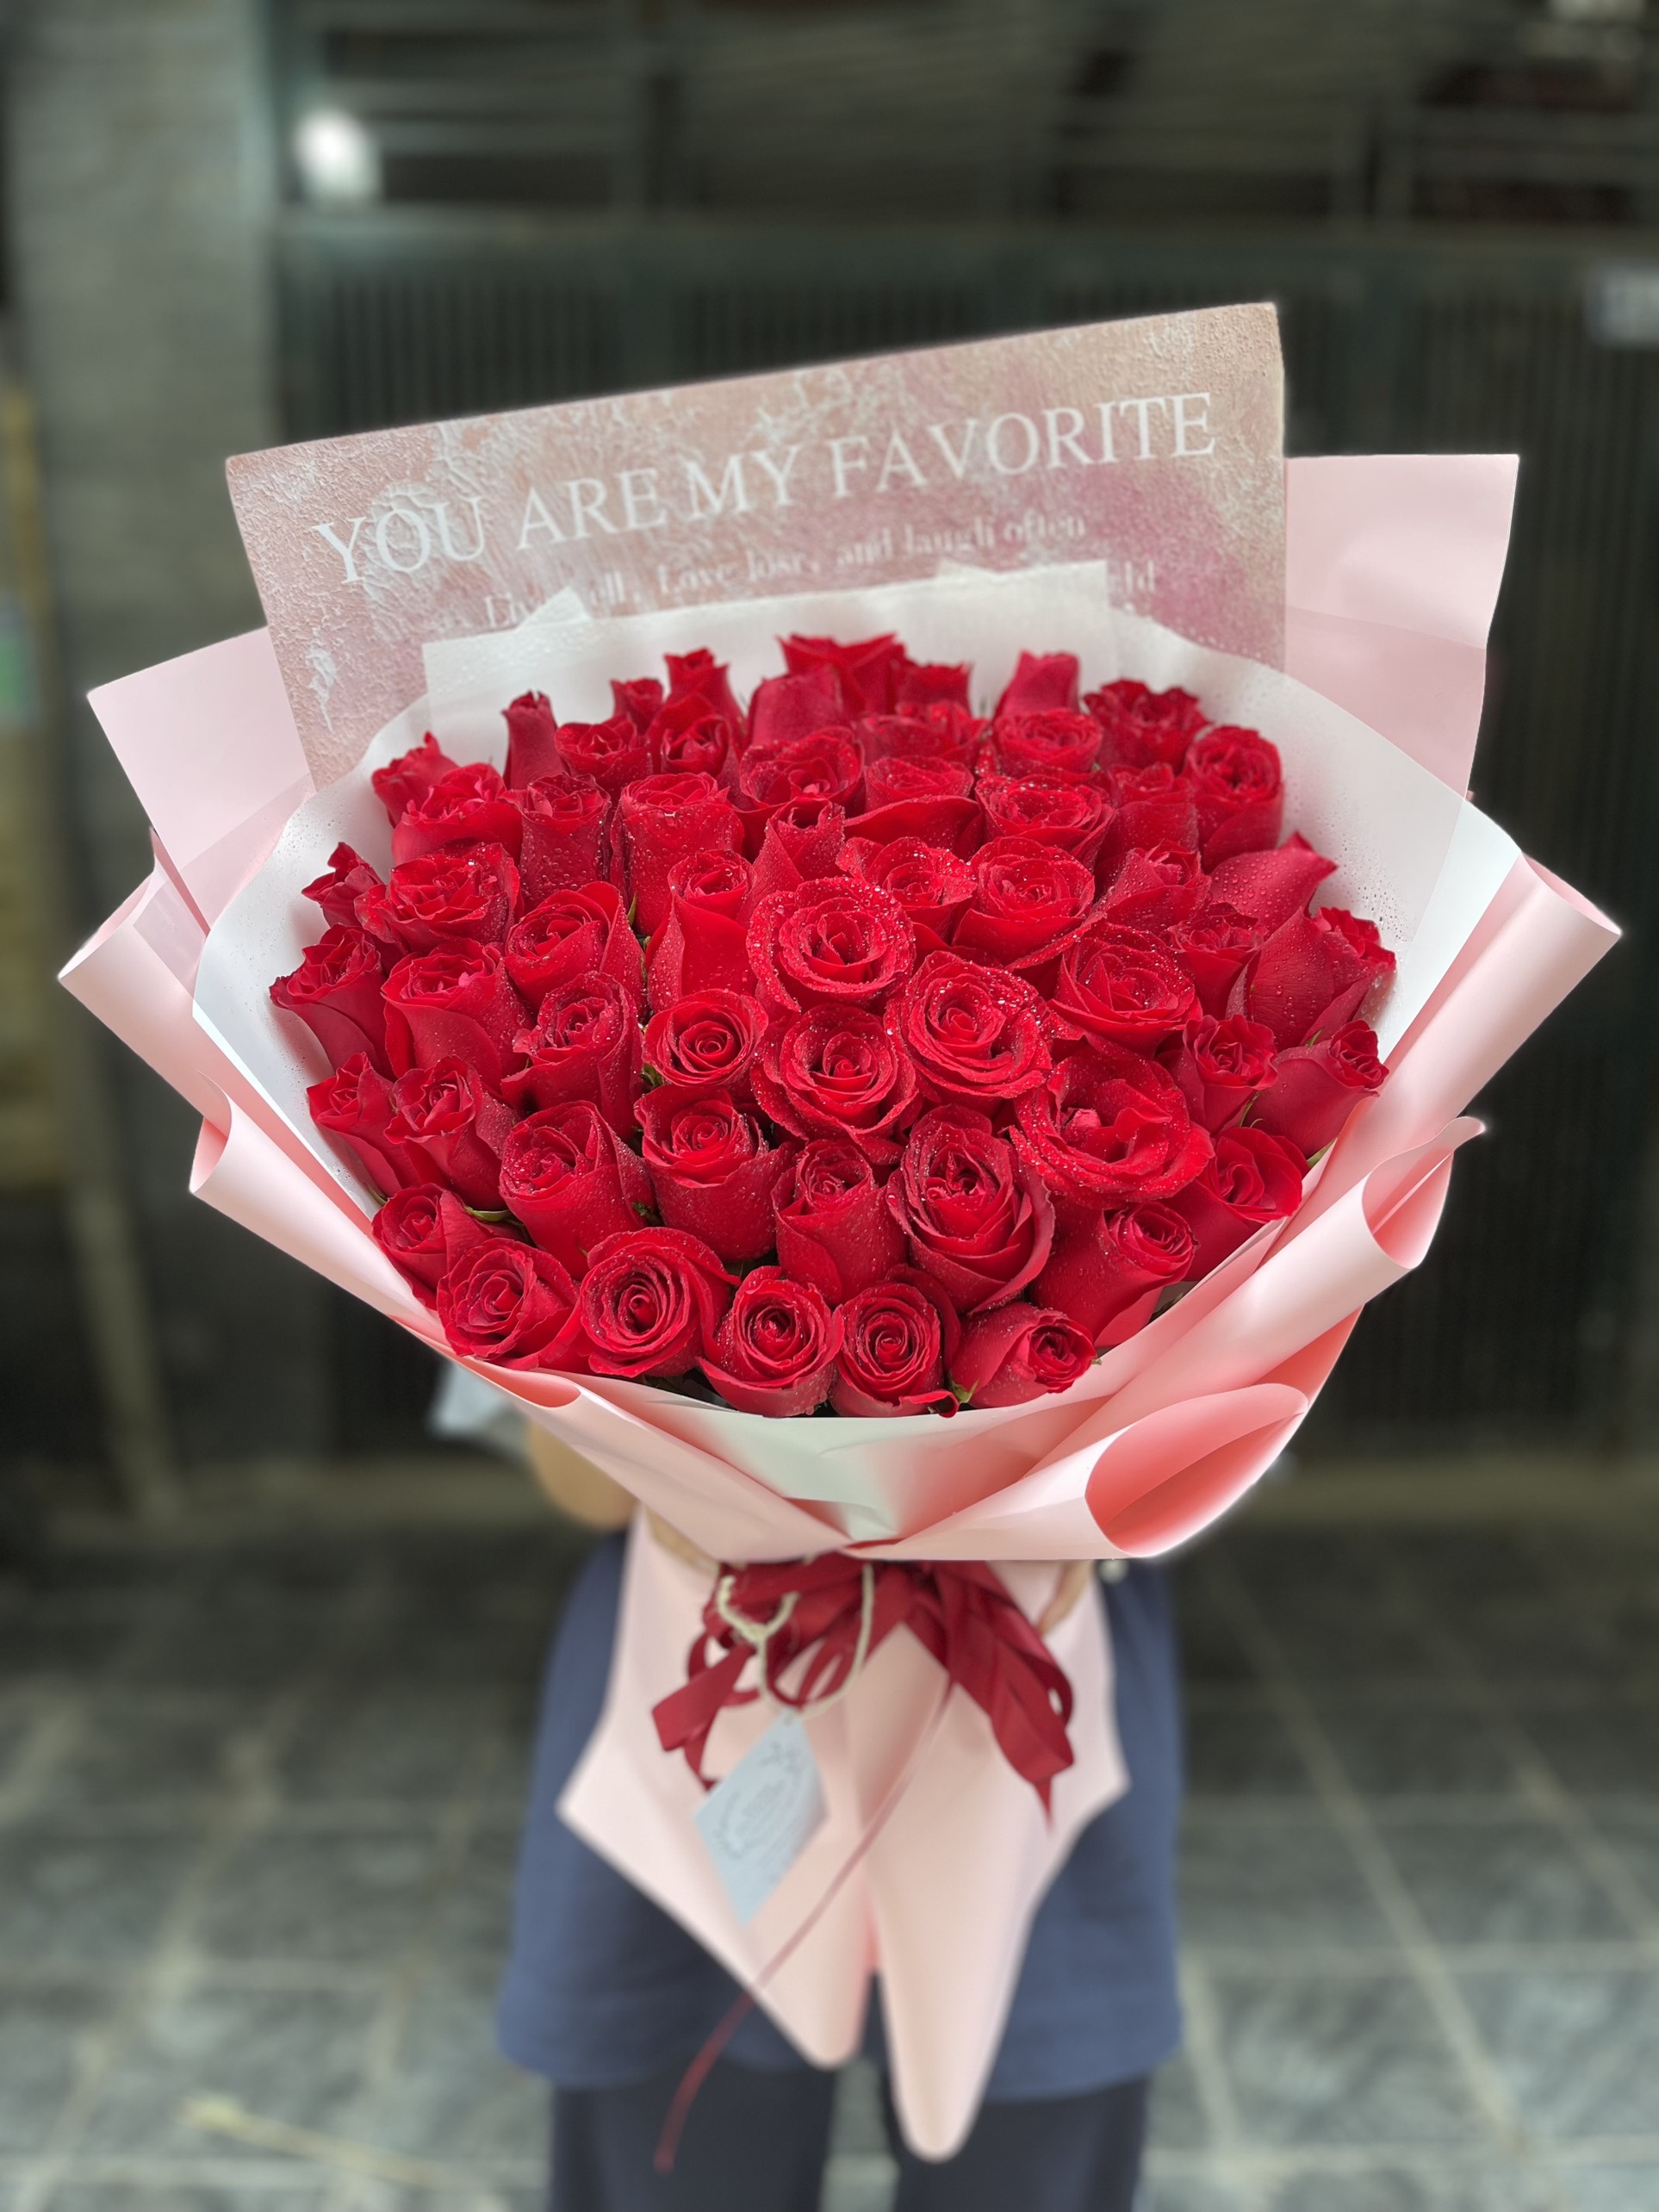 Bó hoa hồng đỏ tặng ngày 8/3. Mua hoa hồng đỏ ở Hà Nội. Đặt hoa hồng đỏ ở Hà Nội. Điện hoa tặng bạn gái ở Hà Nội.